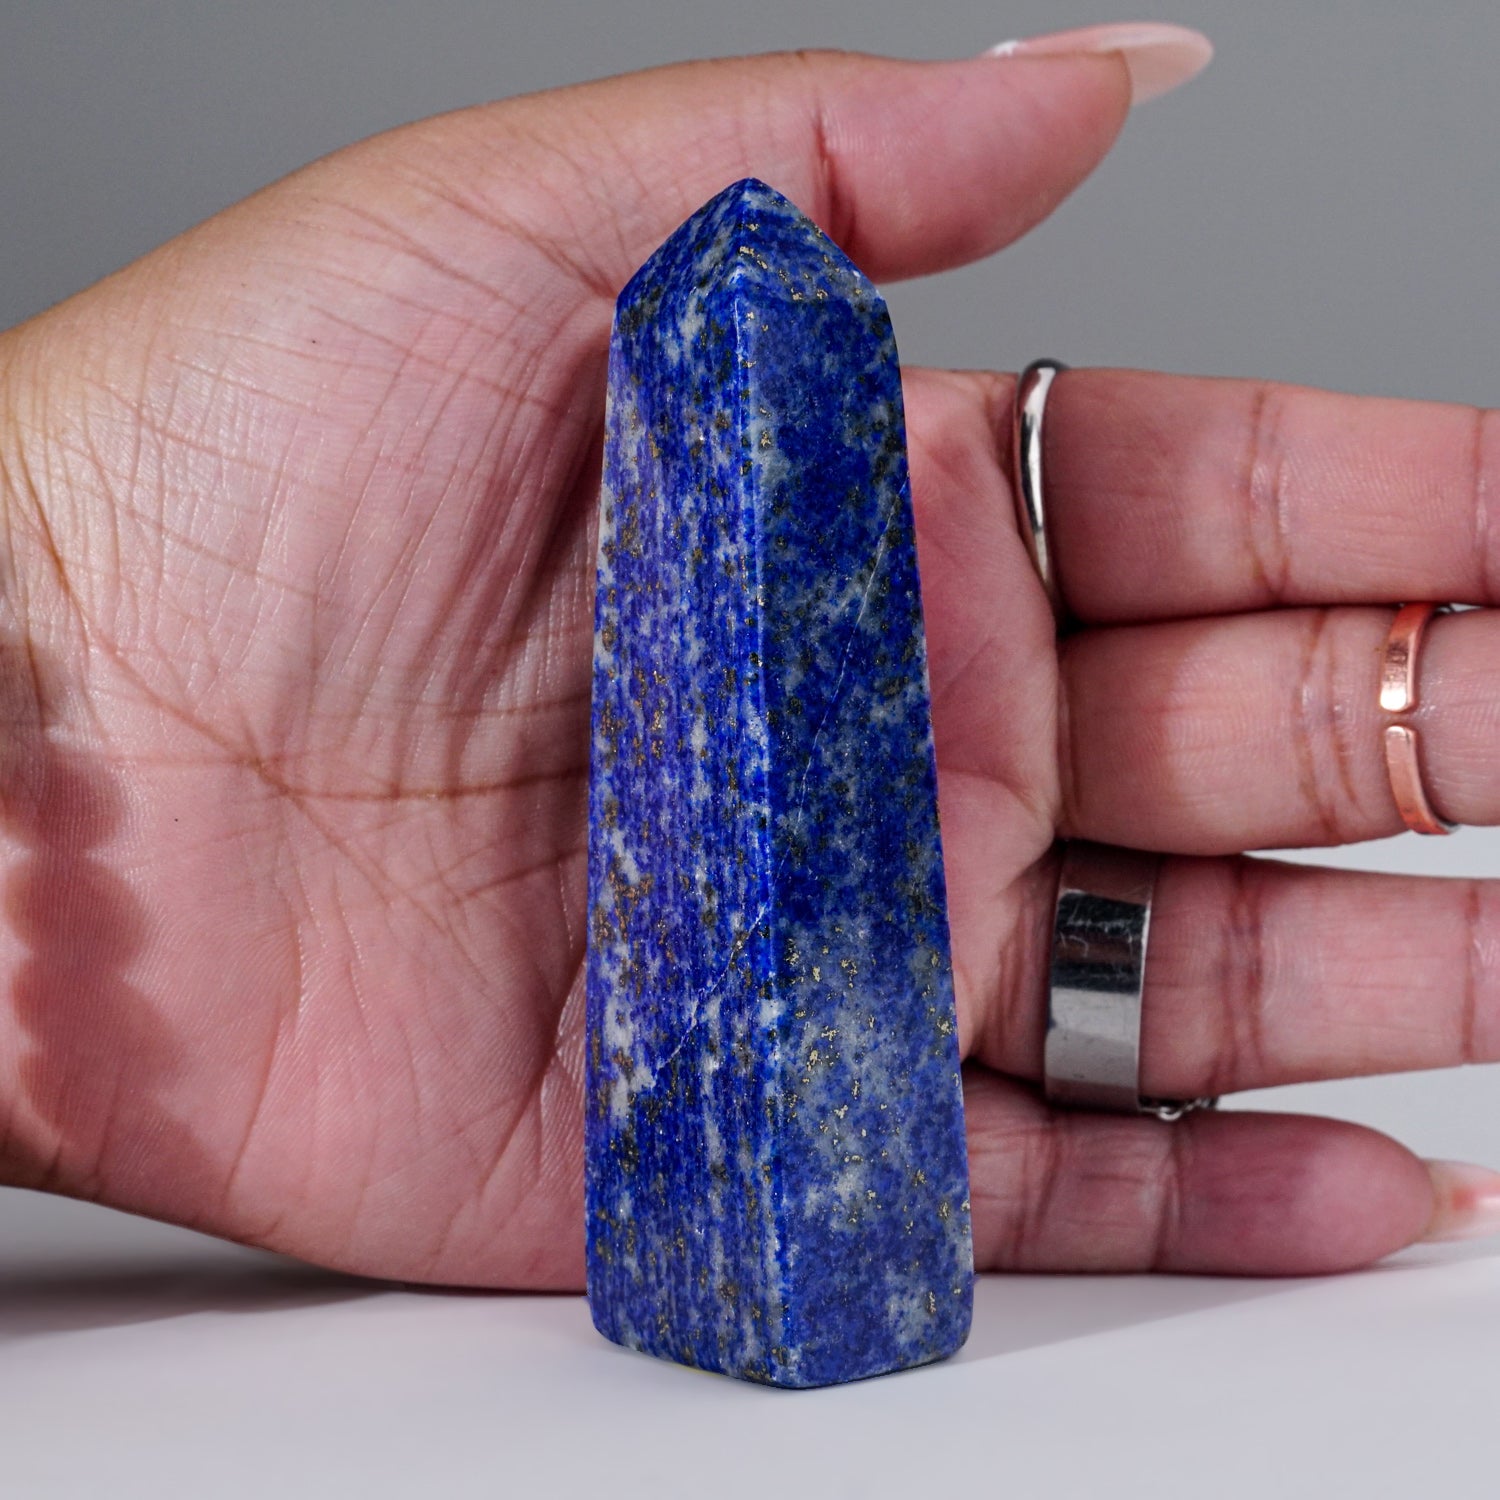 Polished Lapis Lazuli Obelisk from Afghanistan (135 grams)